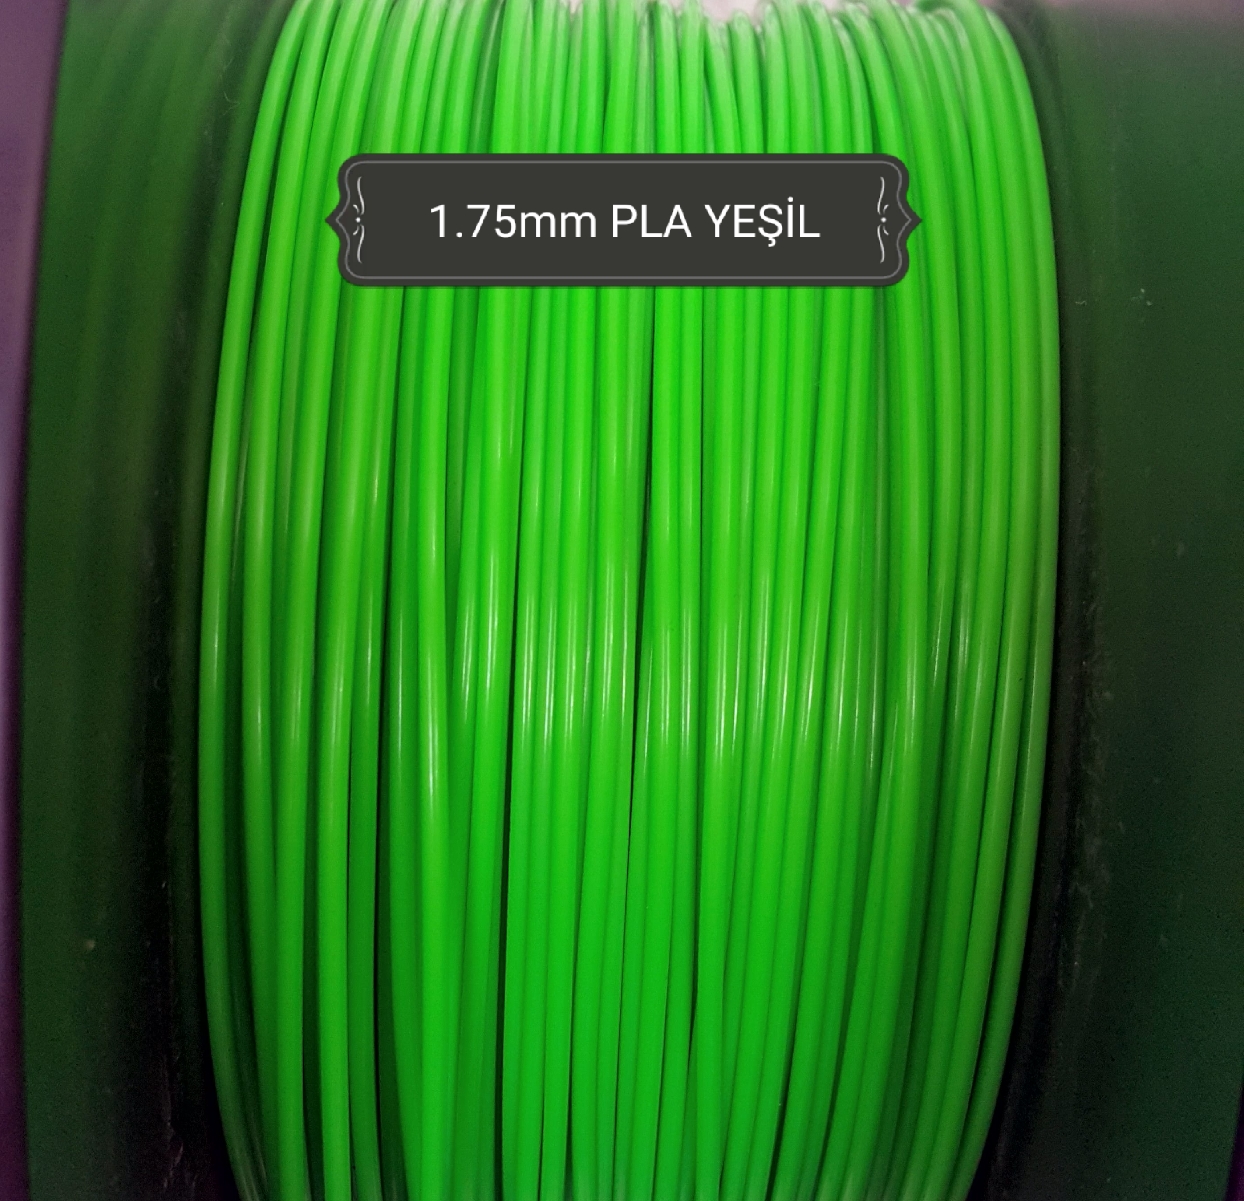 Yeşil Pla Filament 1.75Mm 50Metre (Makaralı)